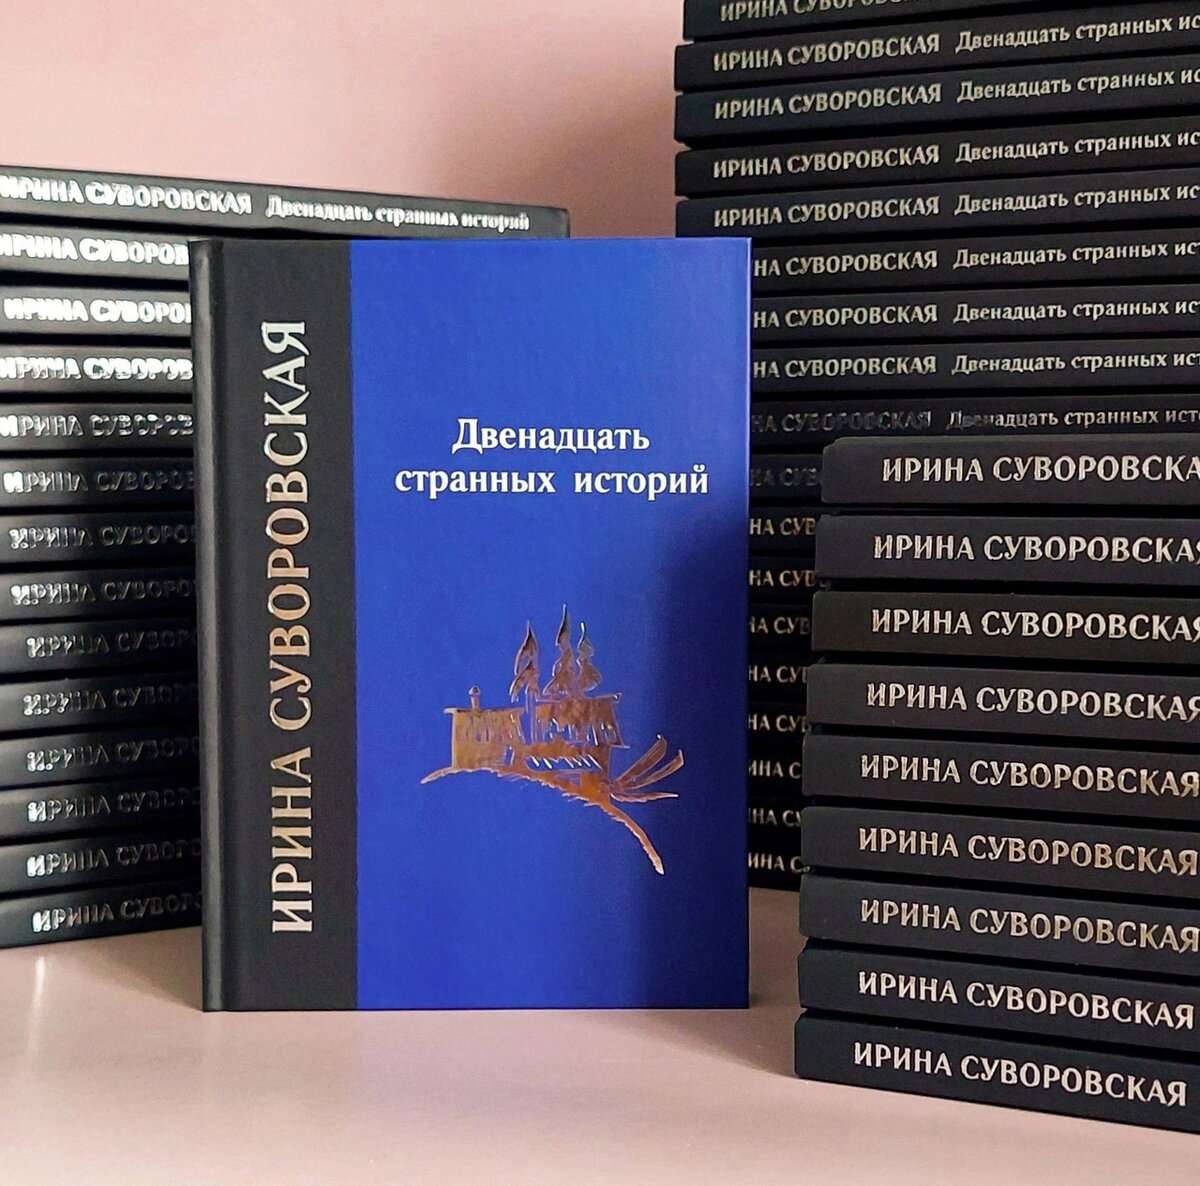 Мистика в Кирилловском округе получила свое отражение в книге писателя-прозаика Ирины Суворовской «Двенадцать странных историй» 16+.-2